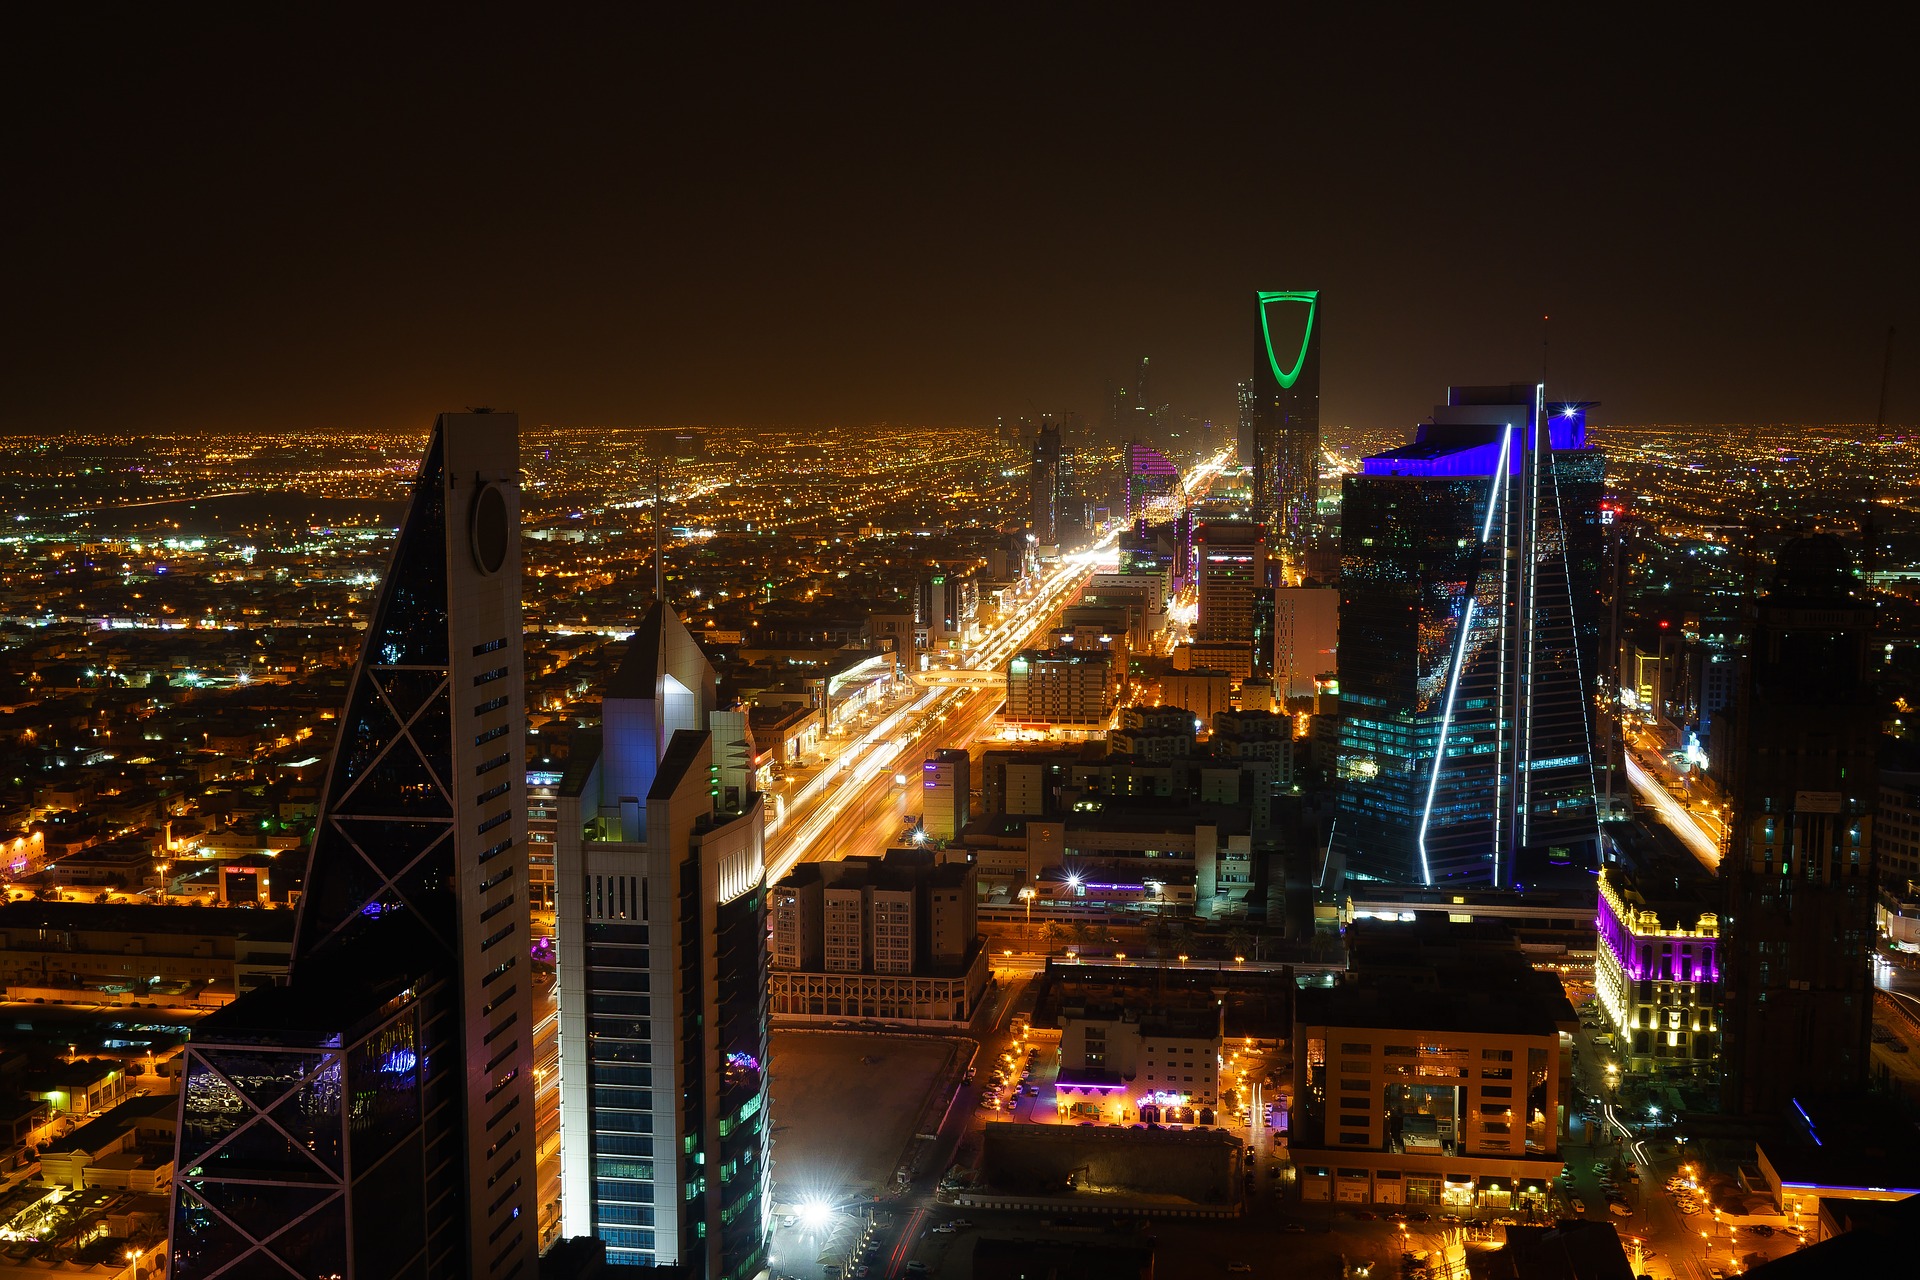 Saudi Arabia ranks 7th in Entrepreneurial Progress globally